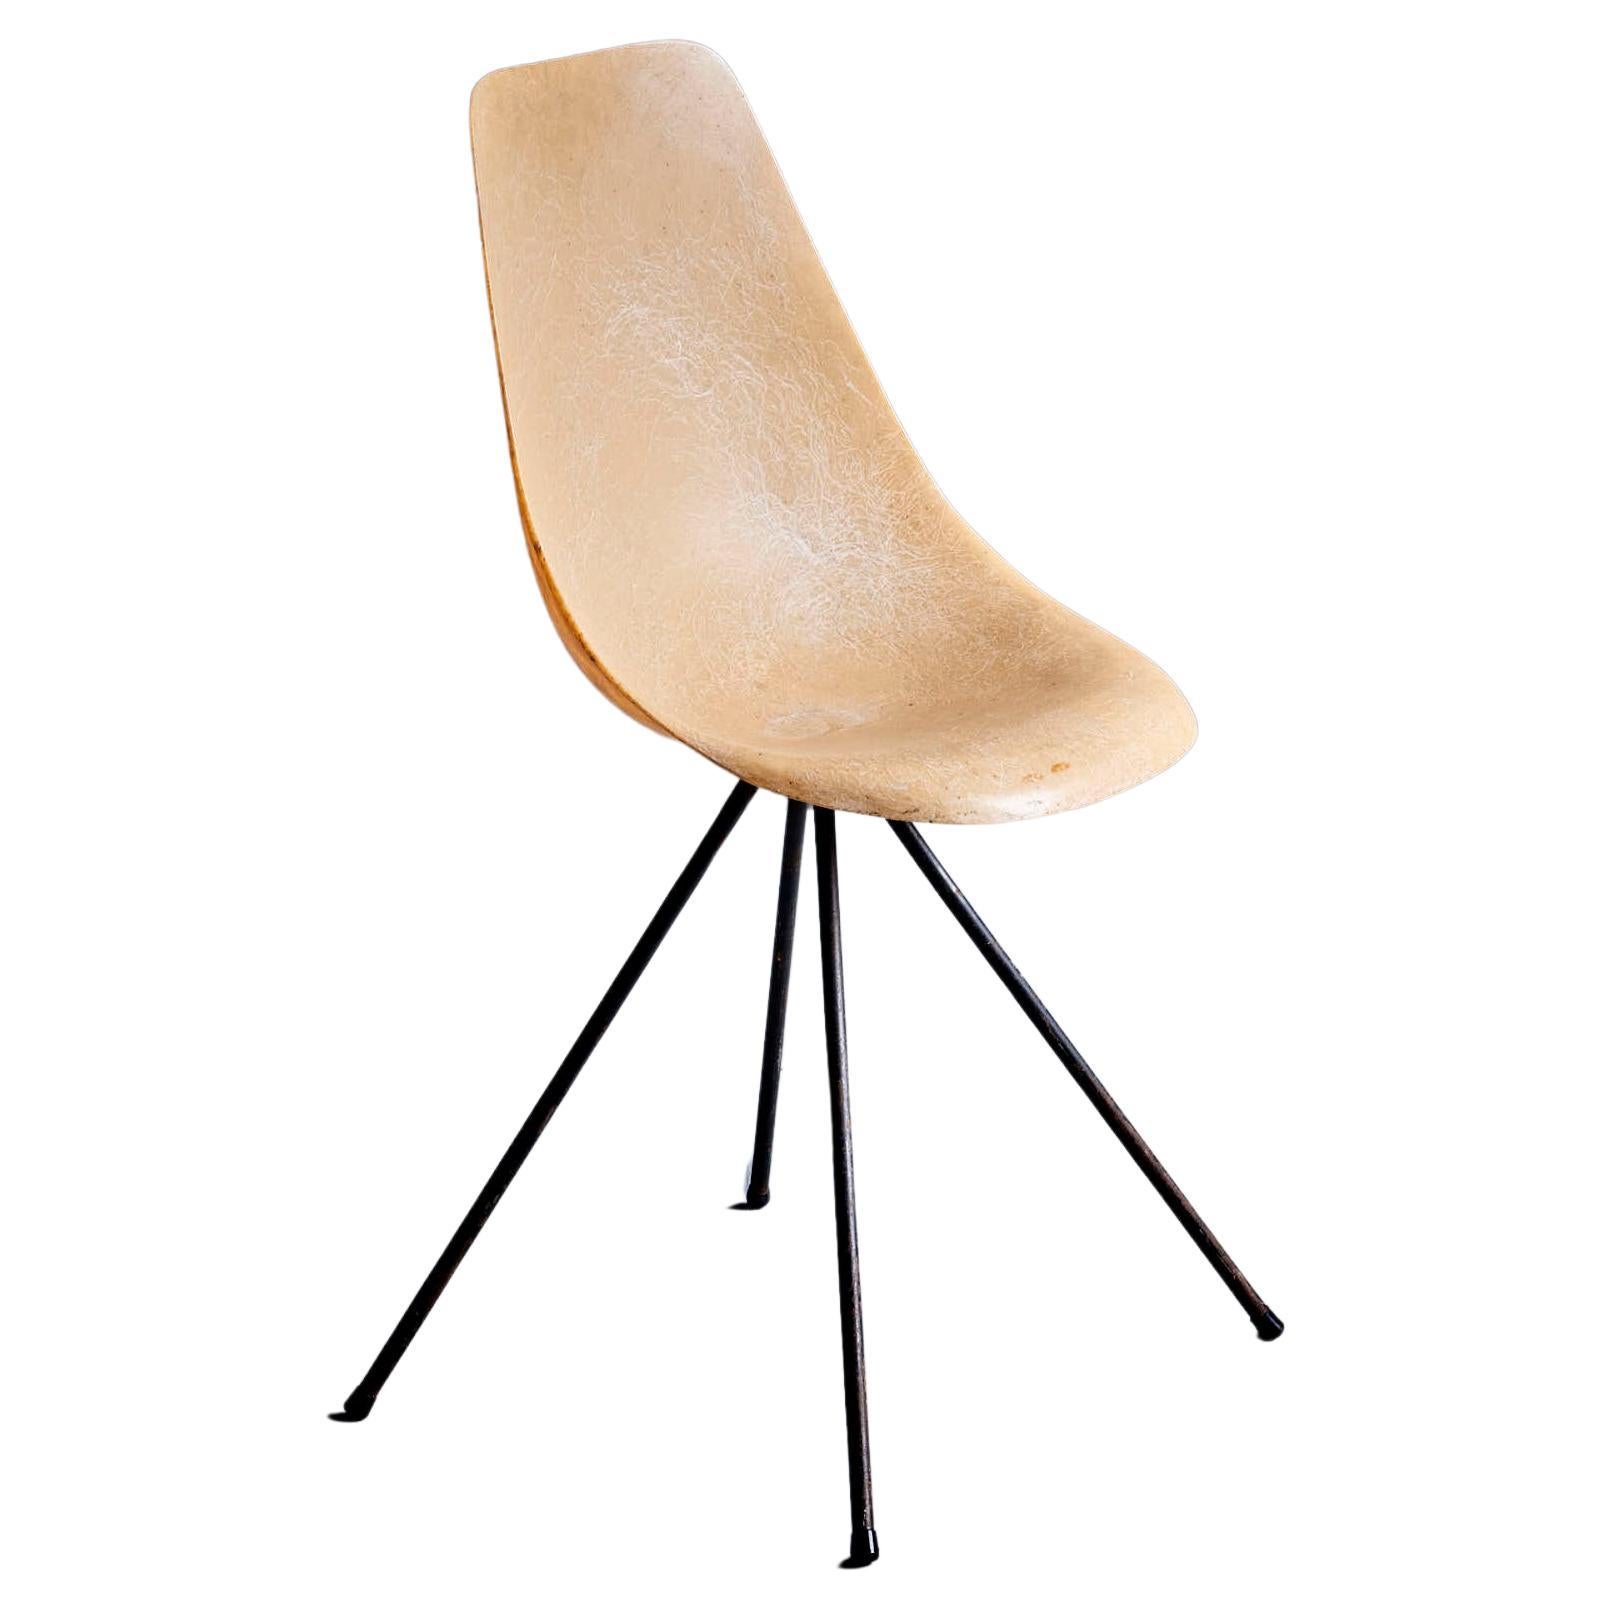 Jean-René Picard for S.E.T.A Fiberglass Chair France - 1950s For Sale